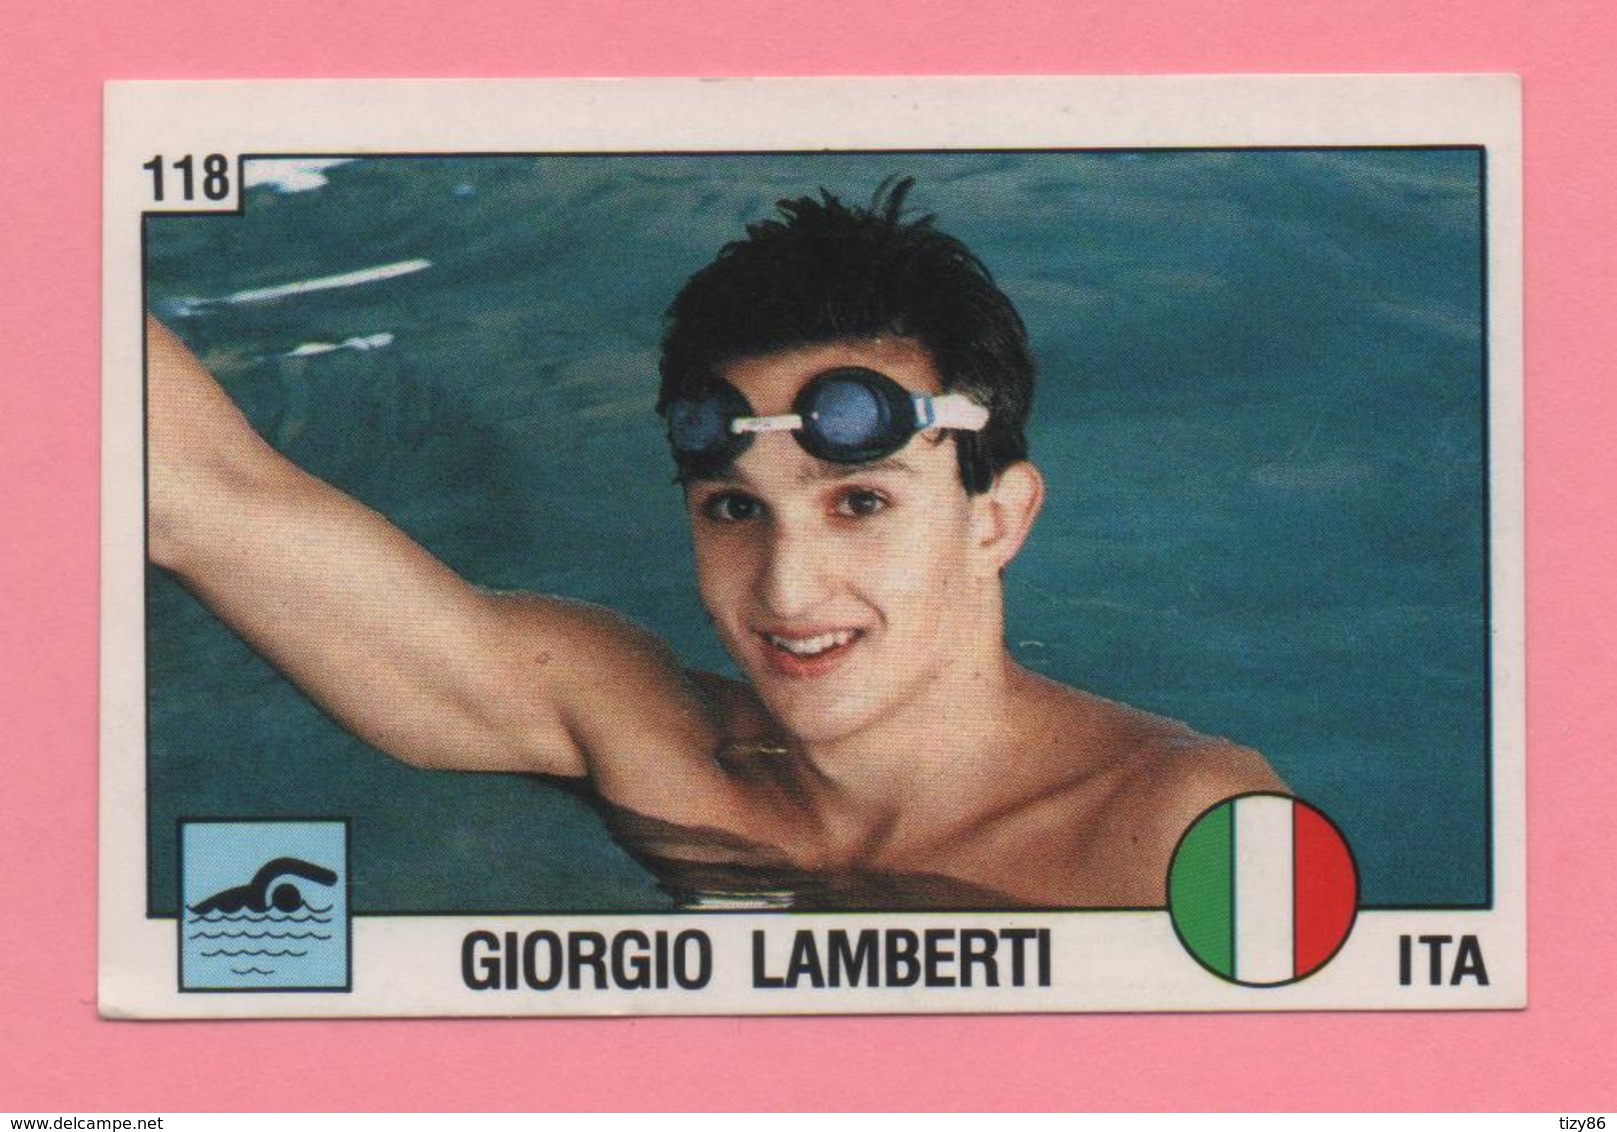 Figurina Panini 1988 N°118 - Nuoto - Giorgio Lamberti - Natación